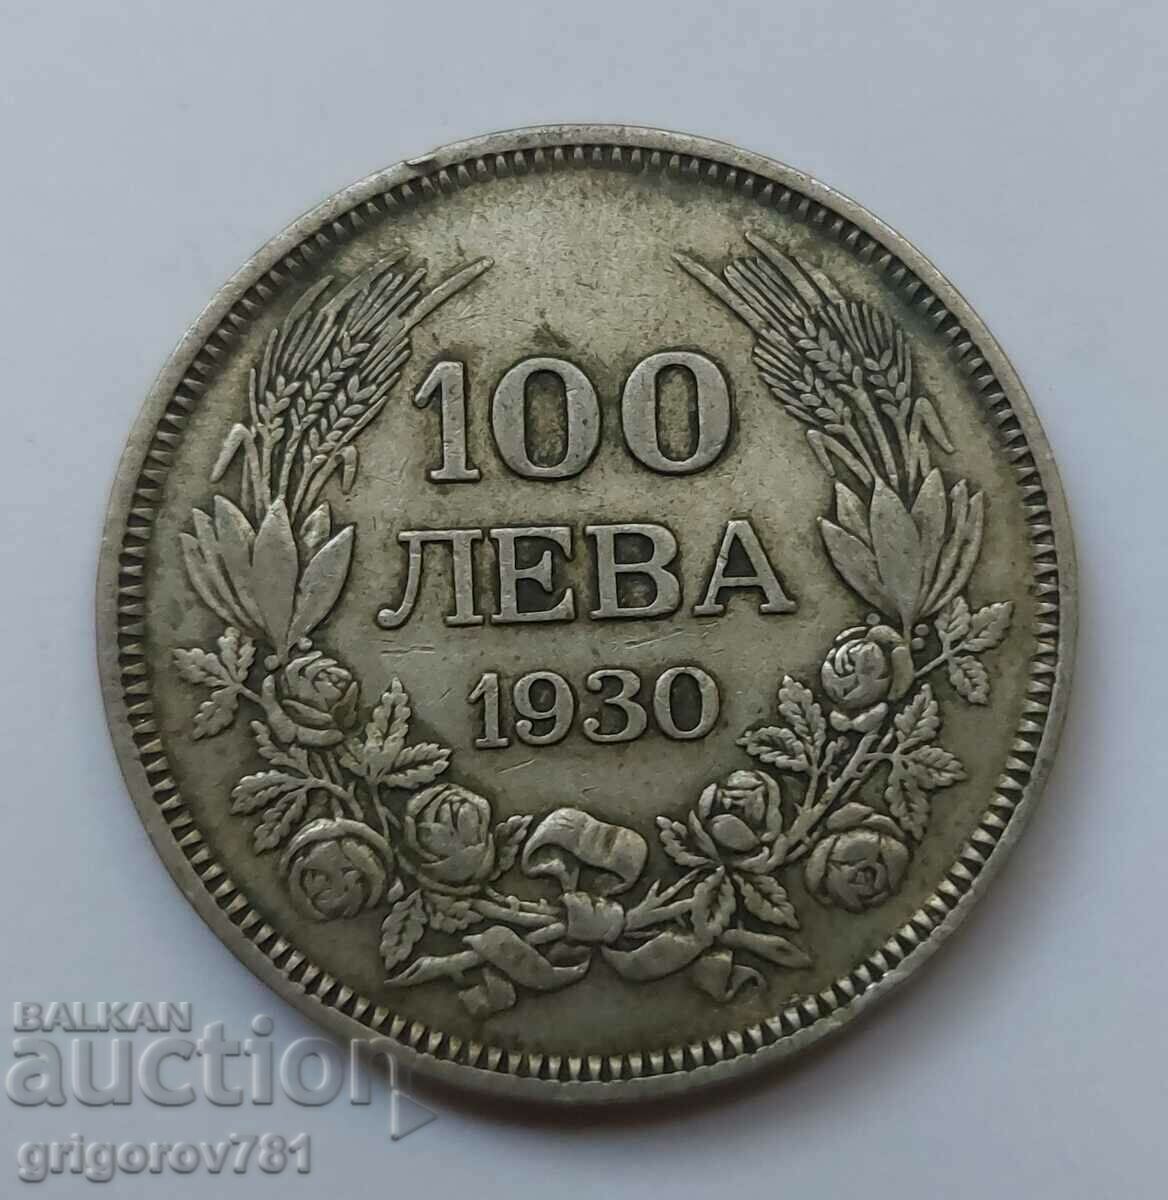 Ασήμι 100 λέβα Βουλγαρία 1930 - ασημένιο νόμισμα #1